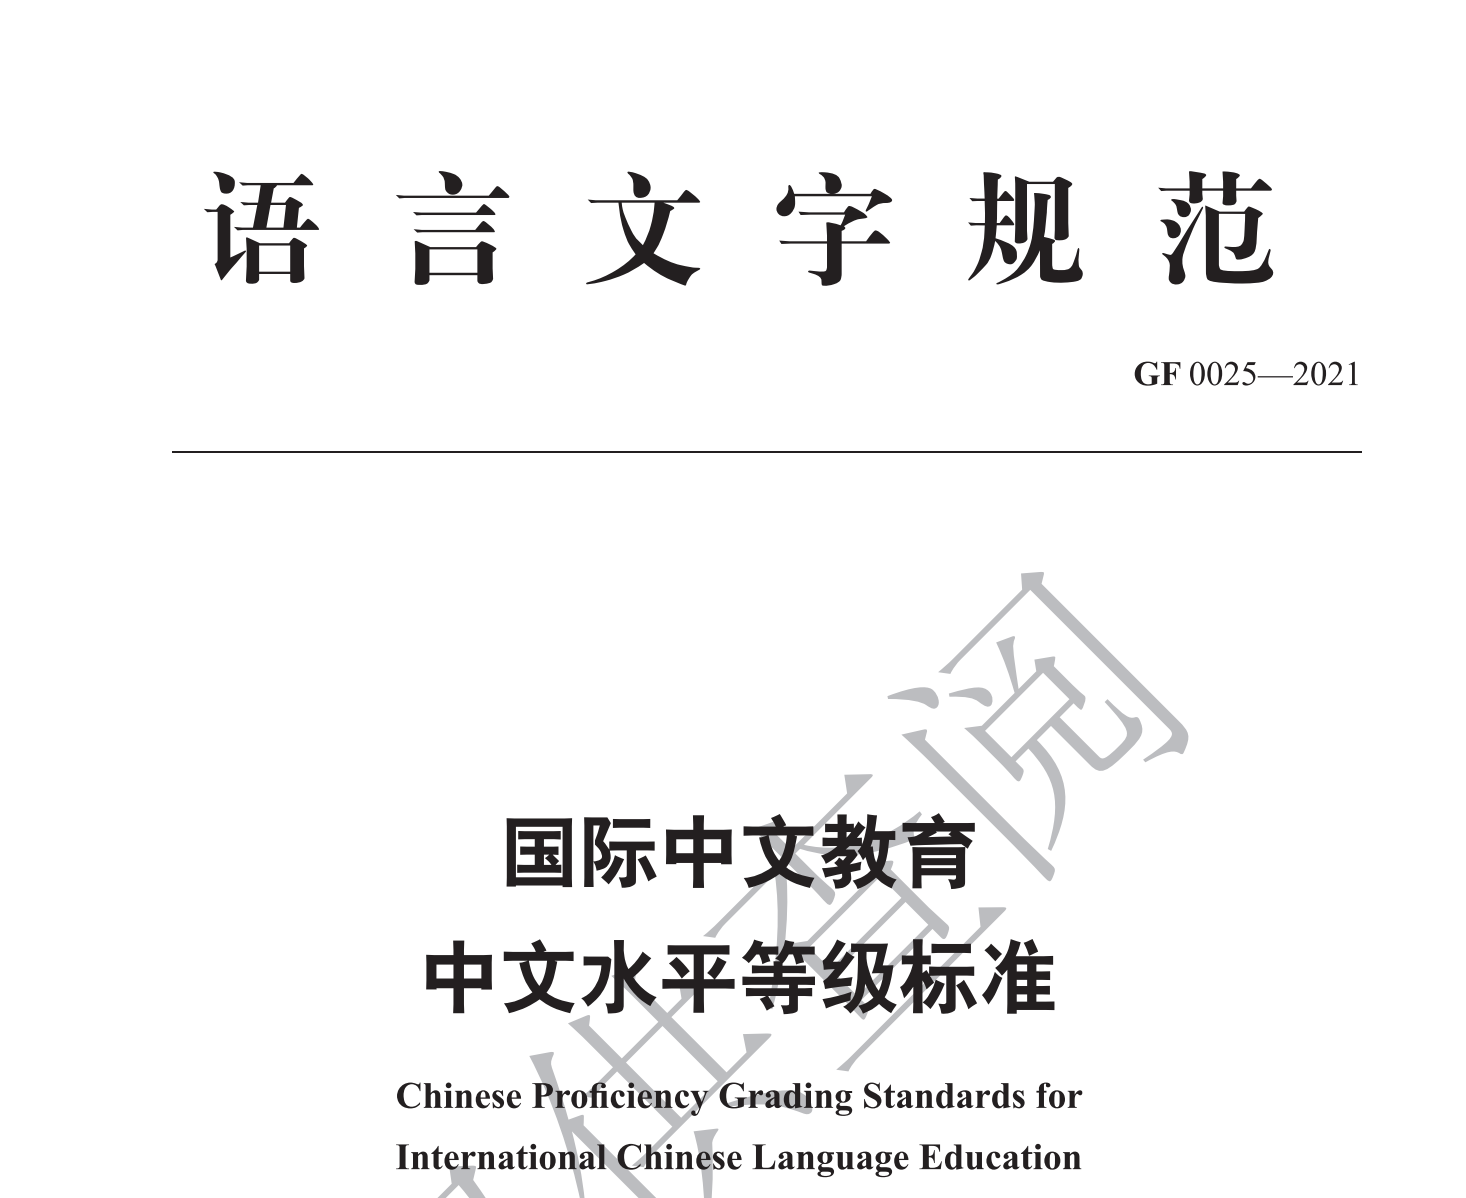 《国际中文教育中文水平等级标准》发布 - 灯塔阅读